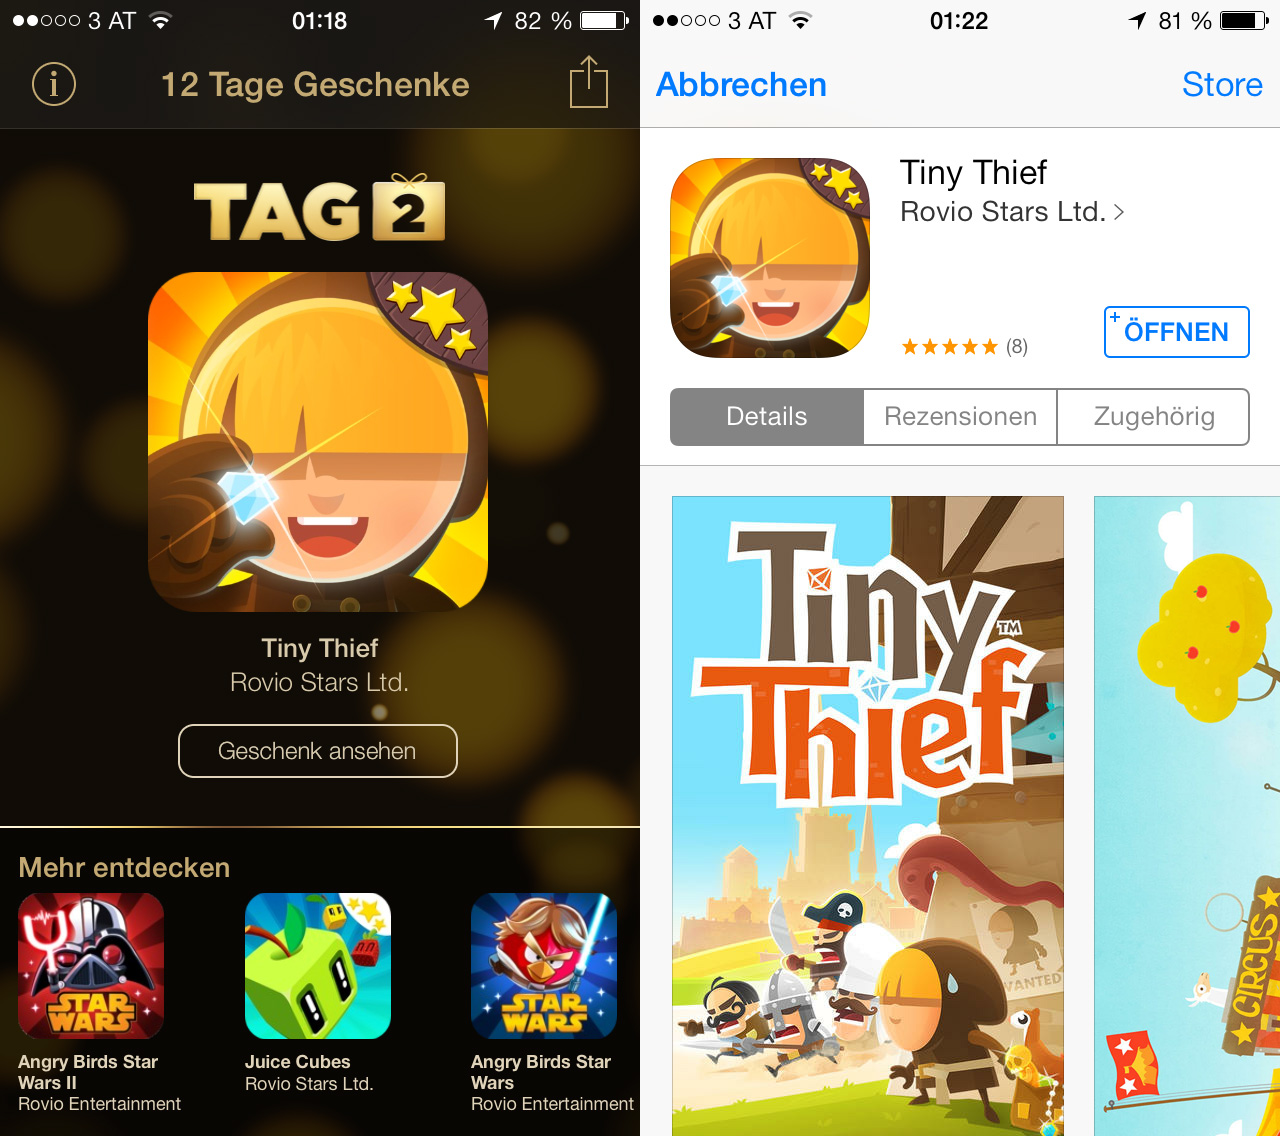 12 Tage Geschenke: Tag 02: Tiny Thief kostenlos in Österreich, Hack4Life, Review, Test, Download, kostenlos, Fabian Geissler